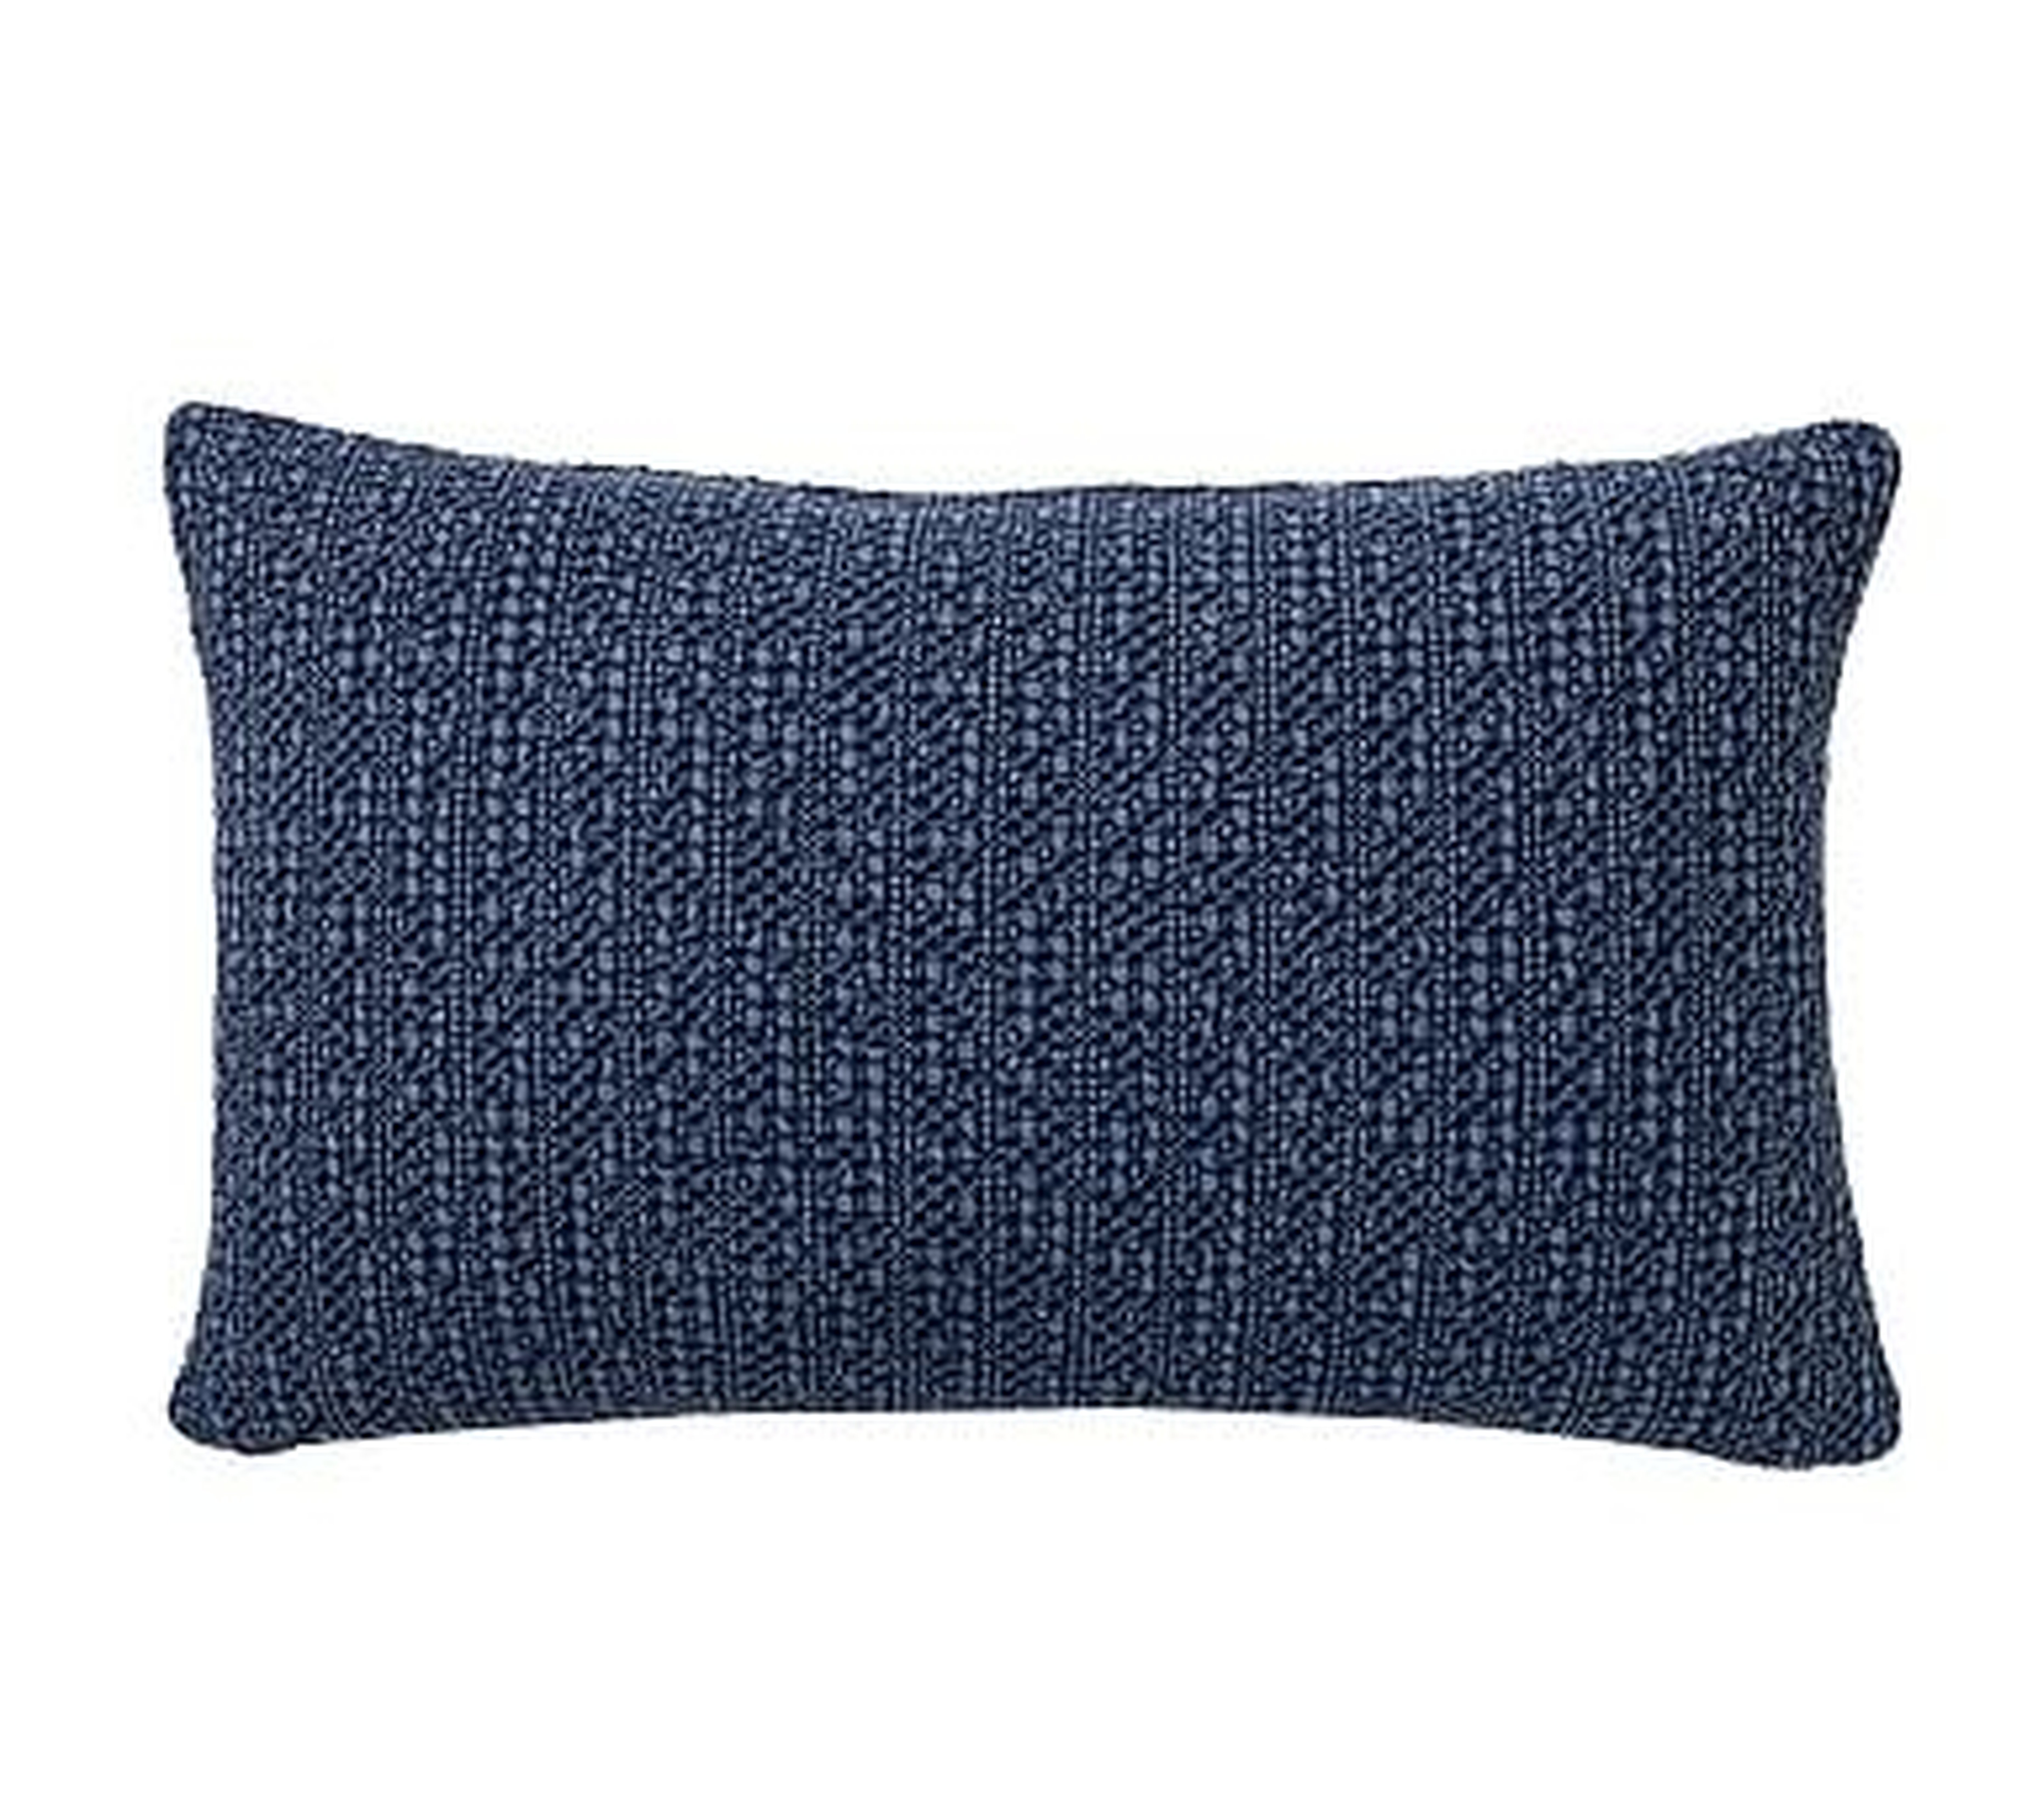 Honeycomb Lumbar Pillow Cover, 16 x 26", Sailor Blue - Pottery Barn